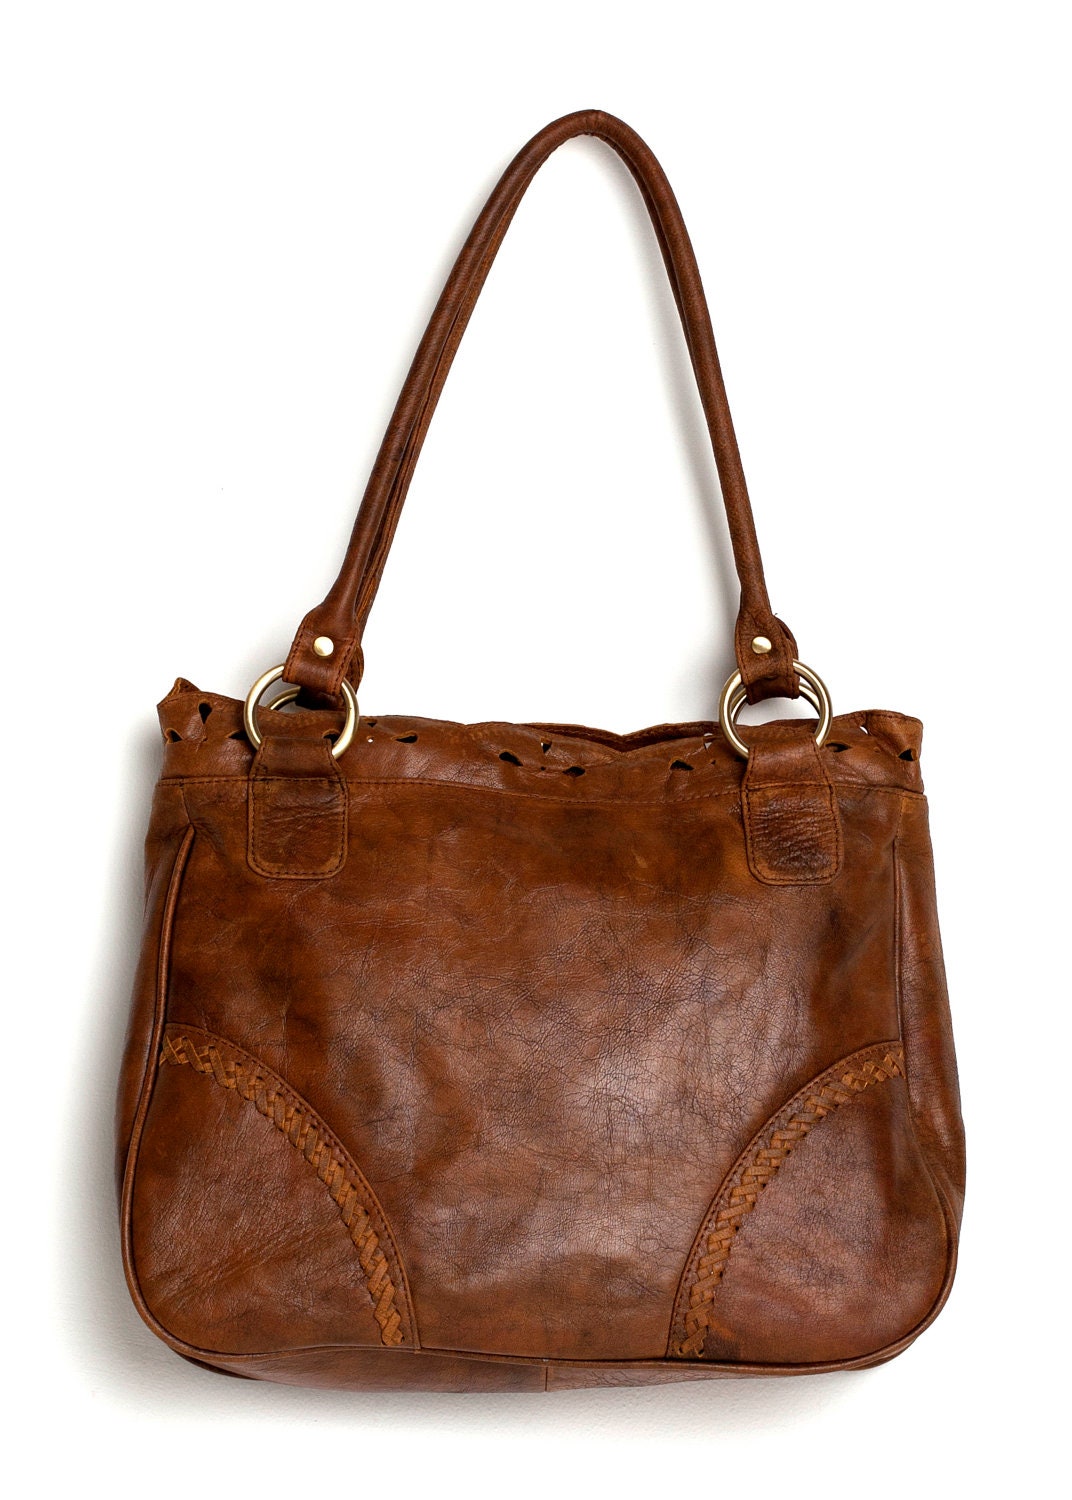 AMICA. Leather shoulder bag / Vintage style bag / leather